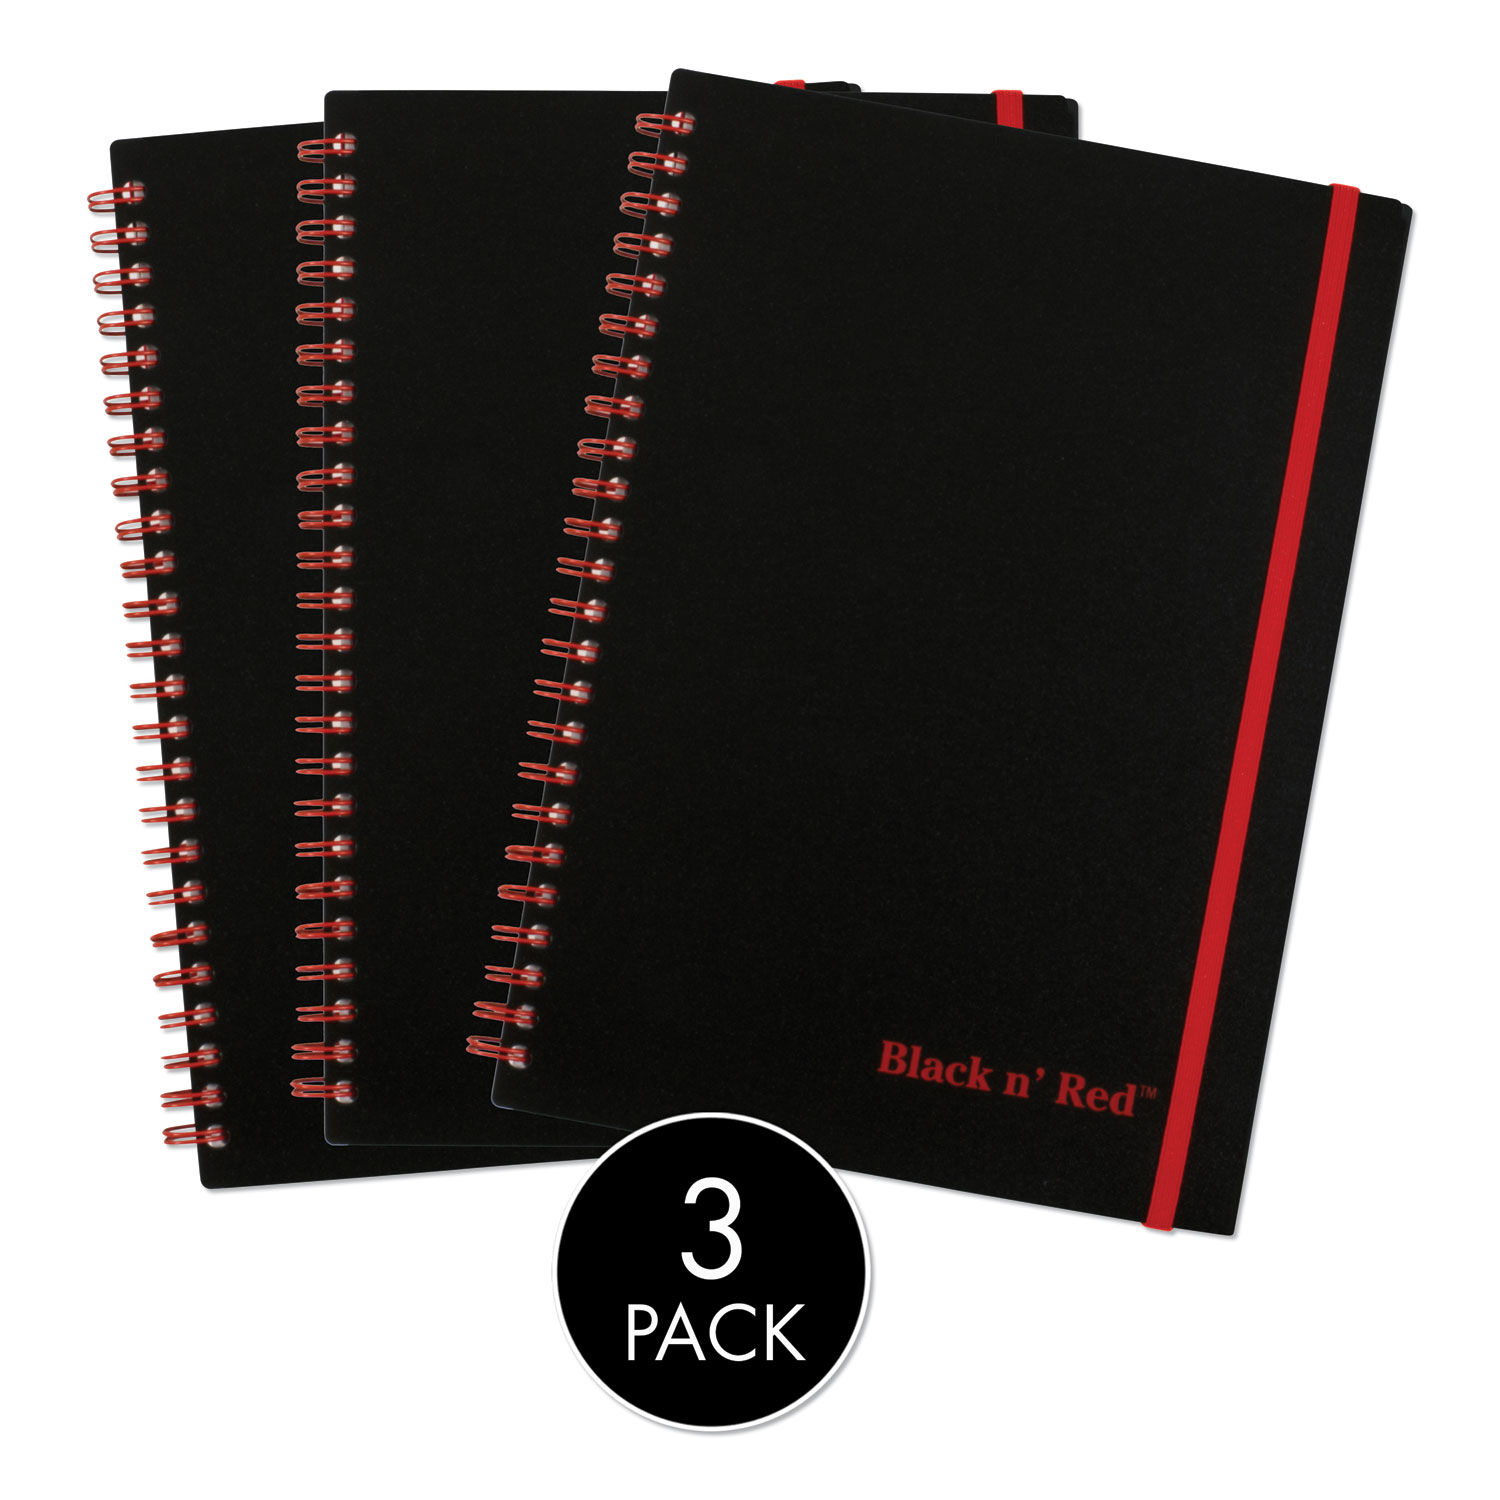  Black n' Red 67026 Twinwire Semi-Rigid Notebook Plus Pack, Wide/Legal Rule, Black, 8.25 x 5.88, 70 Sheets, 3/Pack (JDK67026) 